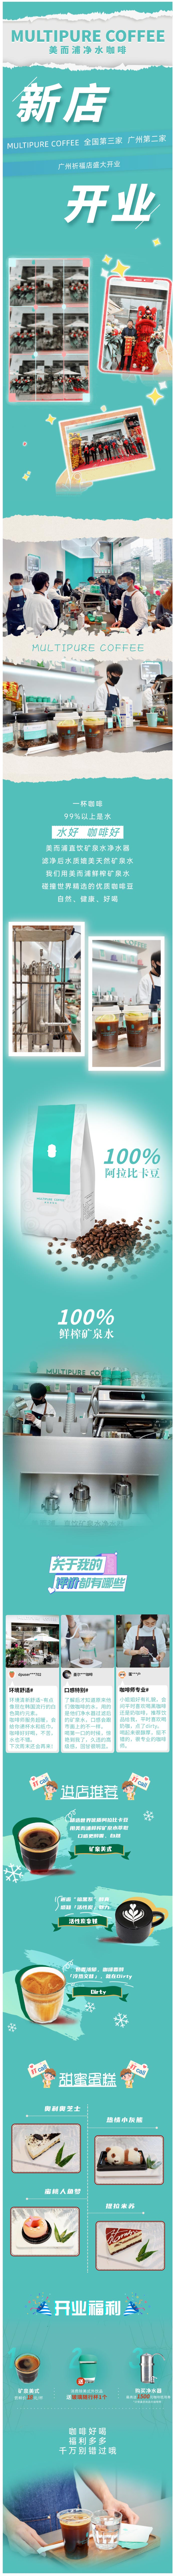 新店开业 | MULTIPURE COFFEE广州祈福店惊喜来袭！